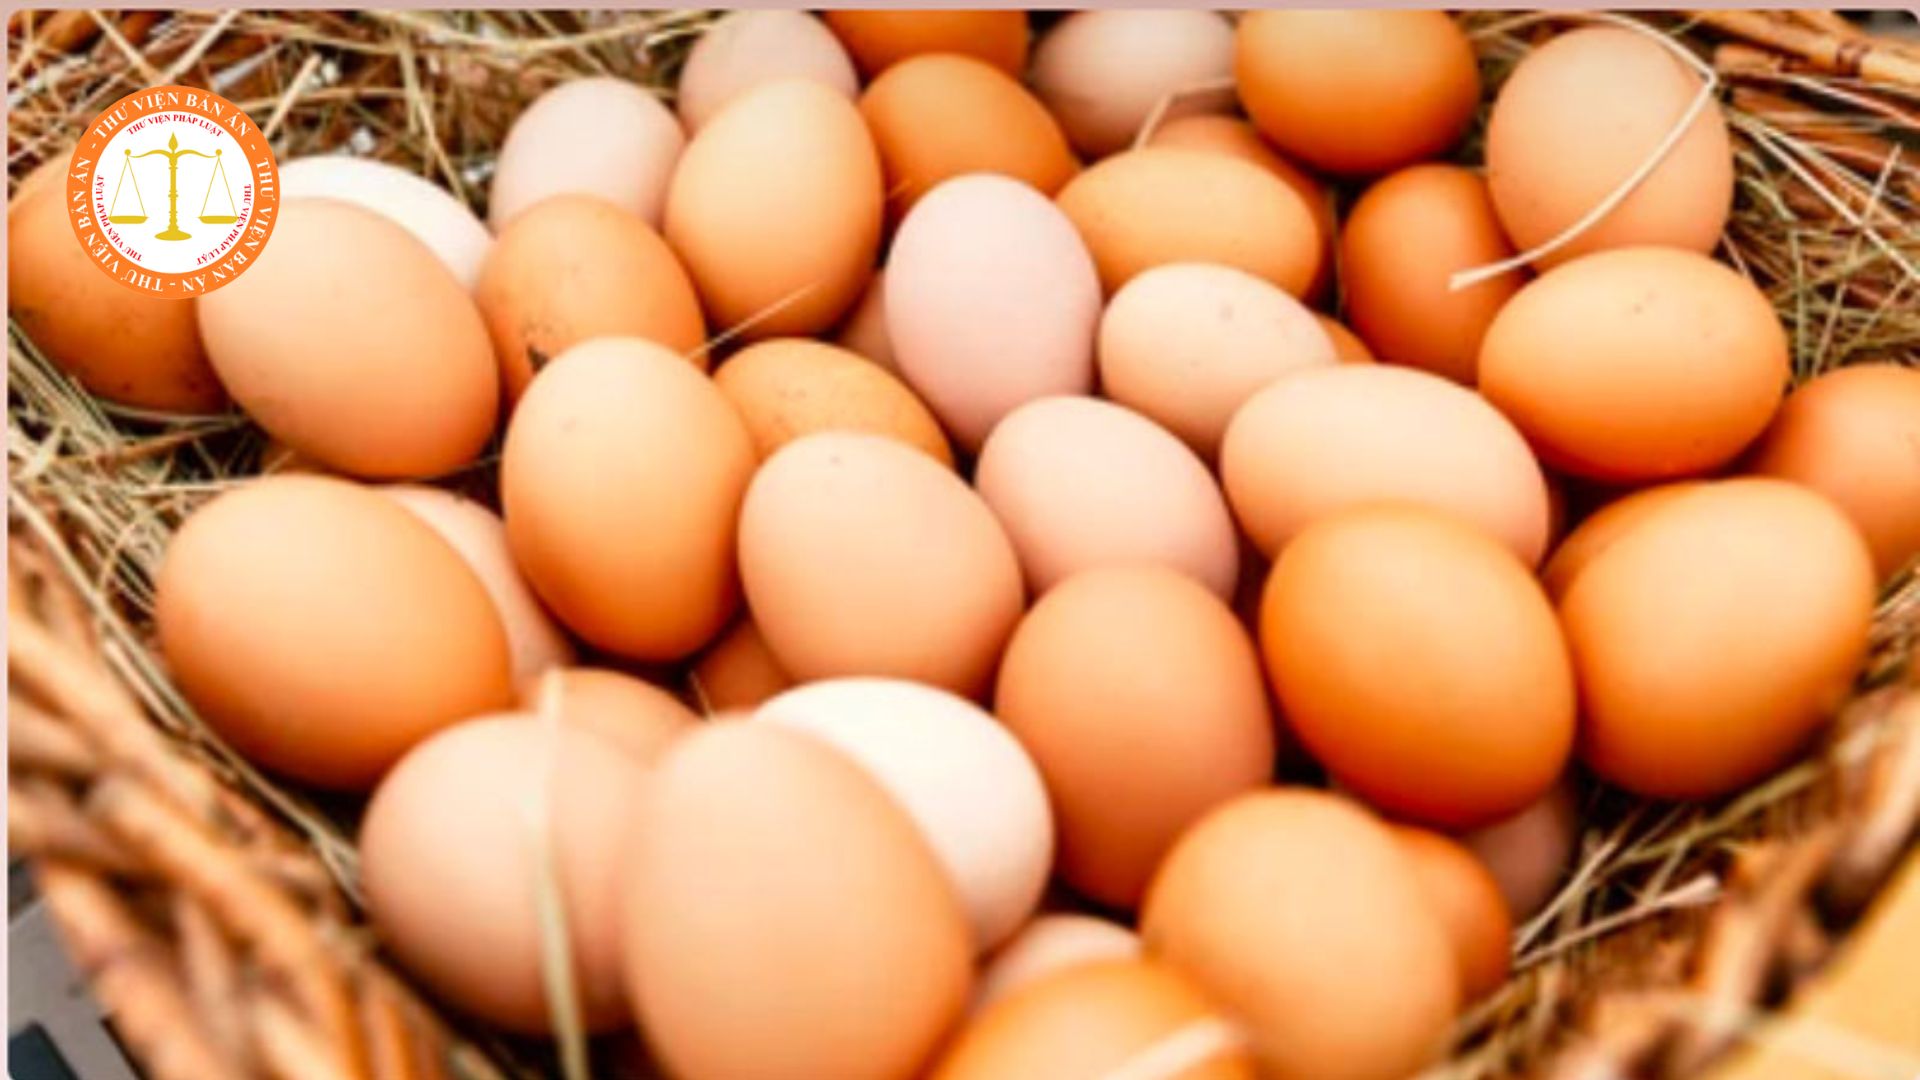 What standards must commercial chicken eggs in Vietnam meet?